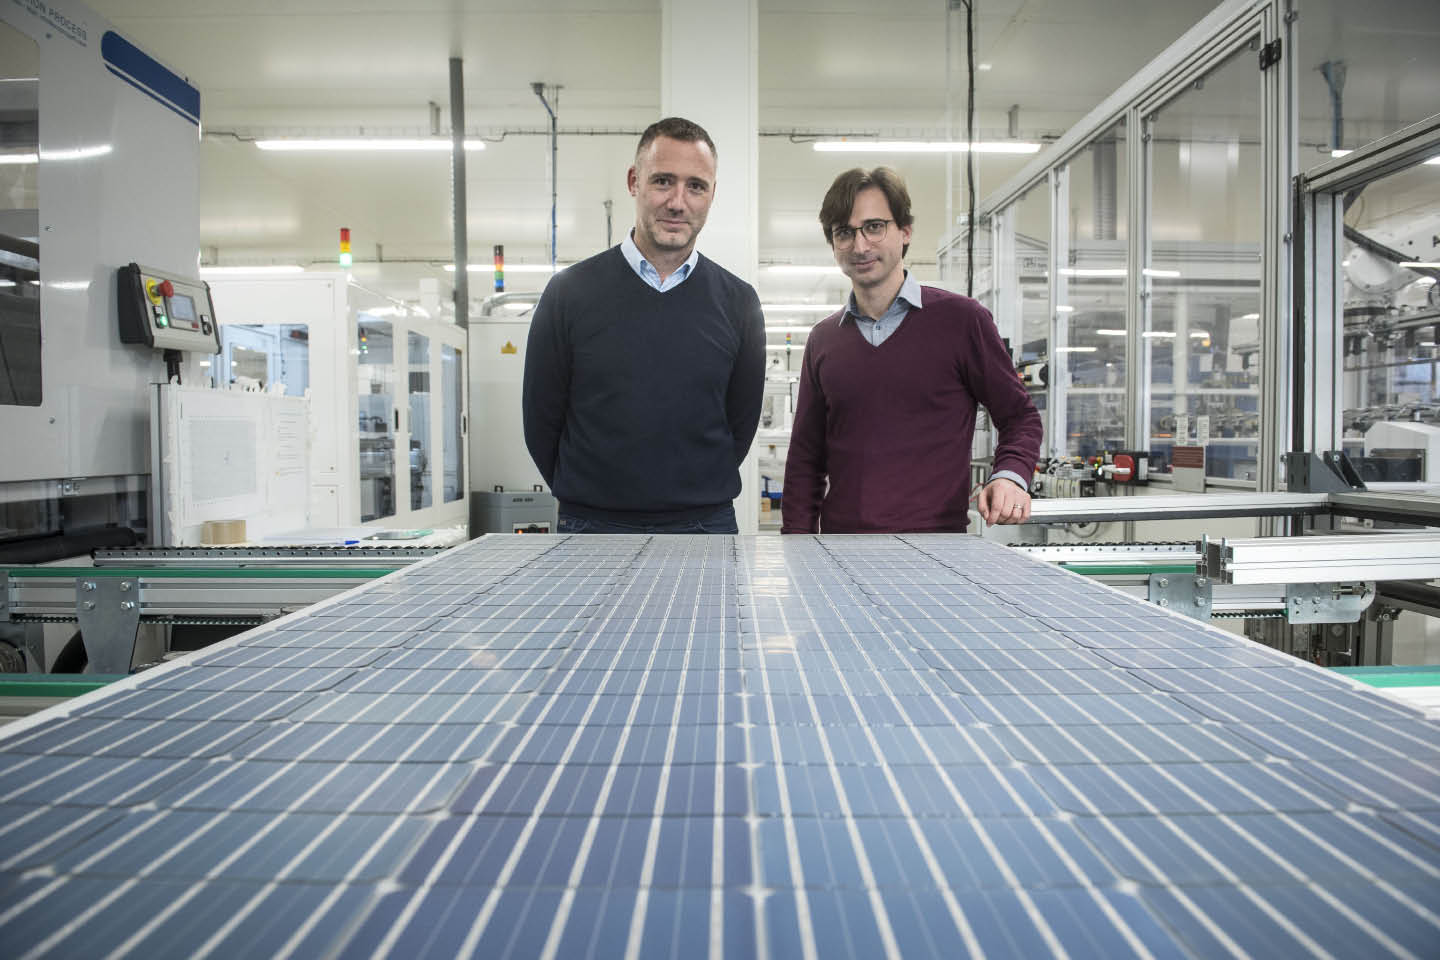 Les panneaux photovoltaïques fabriqués en Alsace bénéficient d’une empreinte carbone 5 à 6 fois inférieure à celle des panneaux « made in China ». © Dorothée Parent